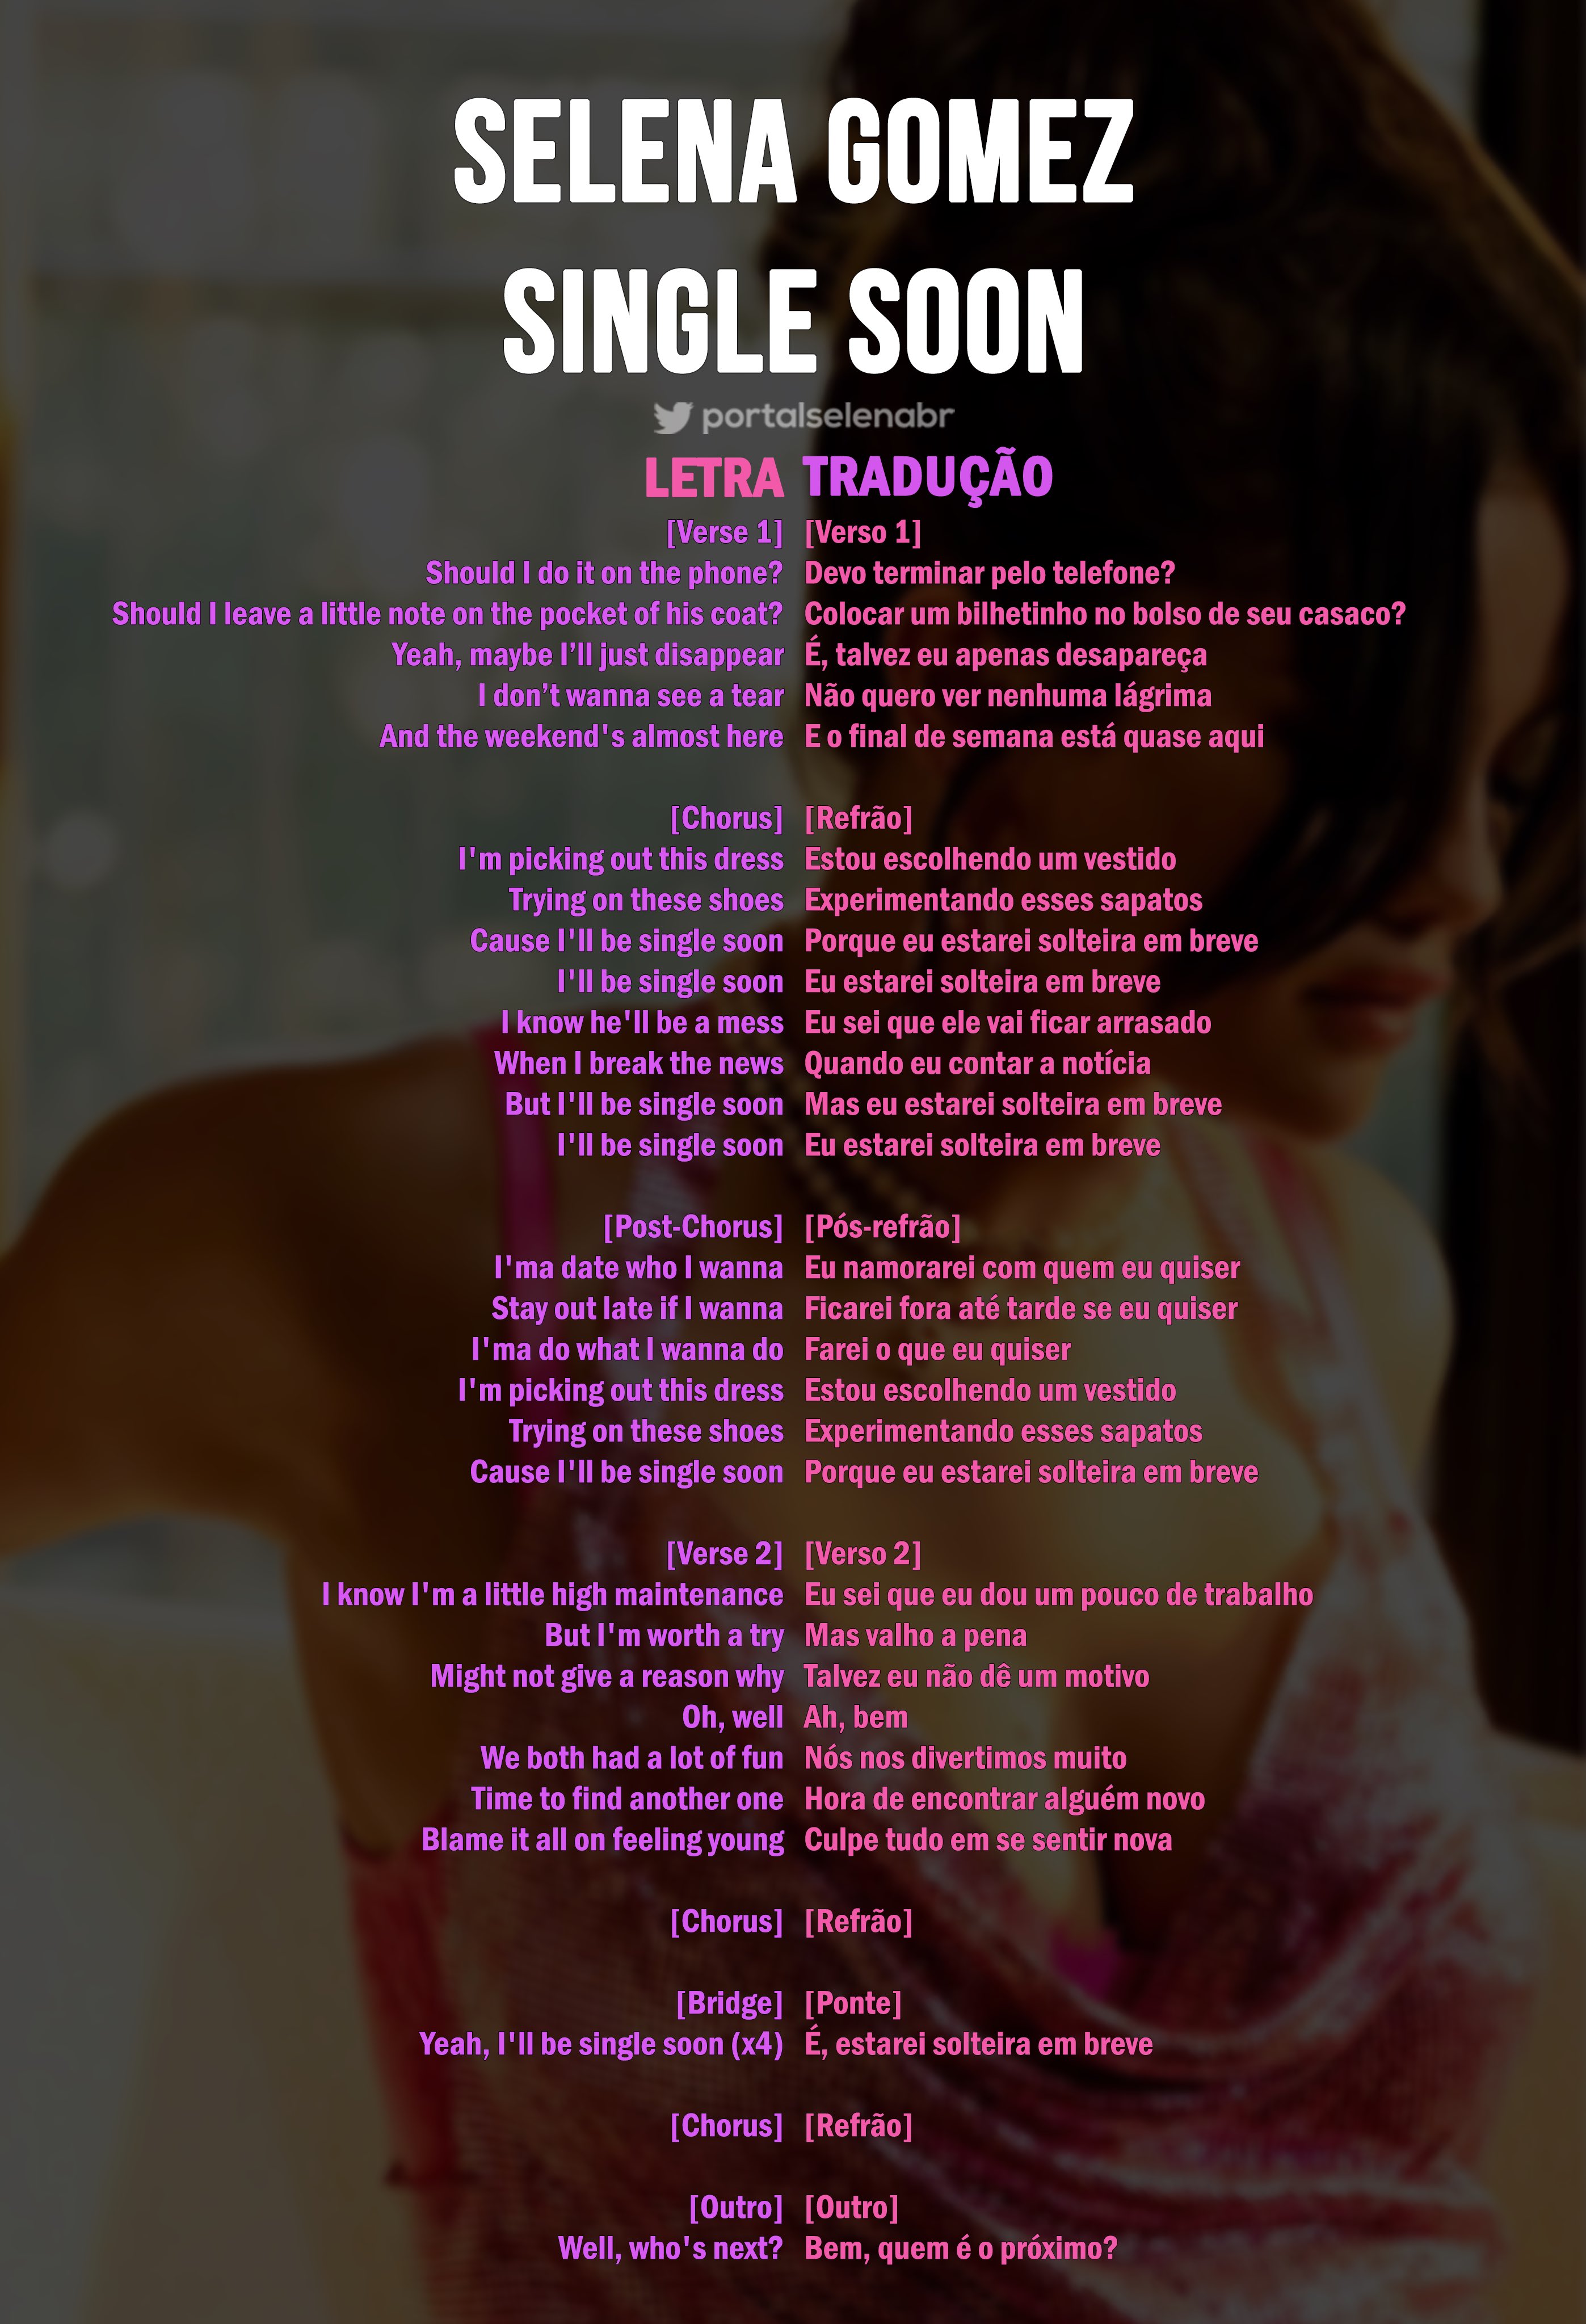 Portal Selena Brasil on X: Confira a tradução da letra completa